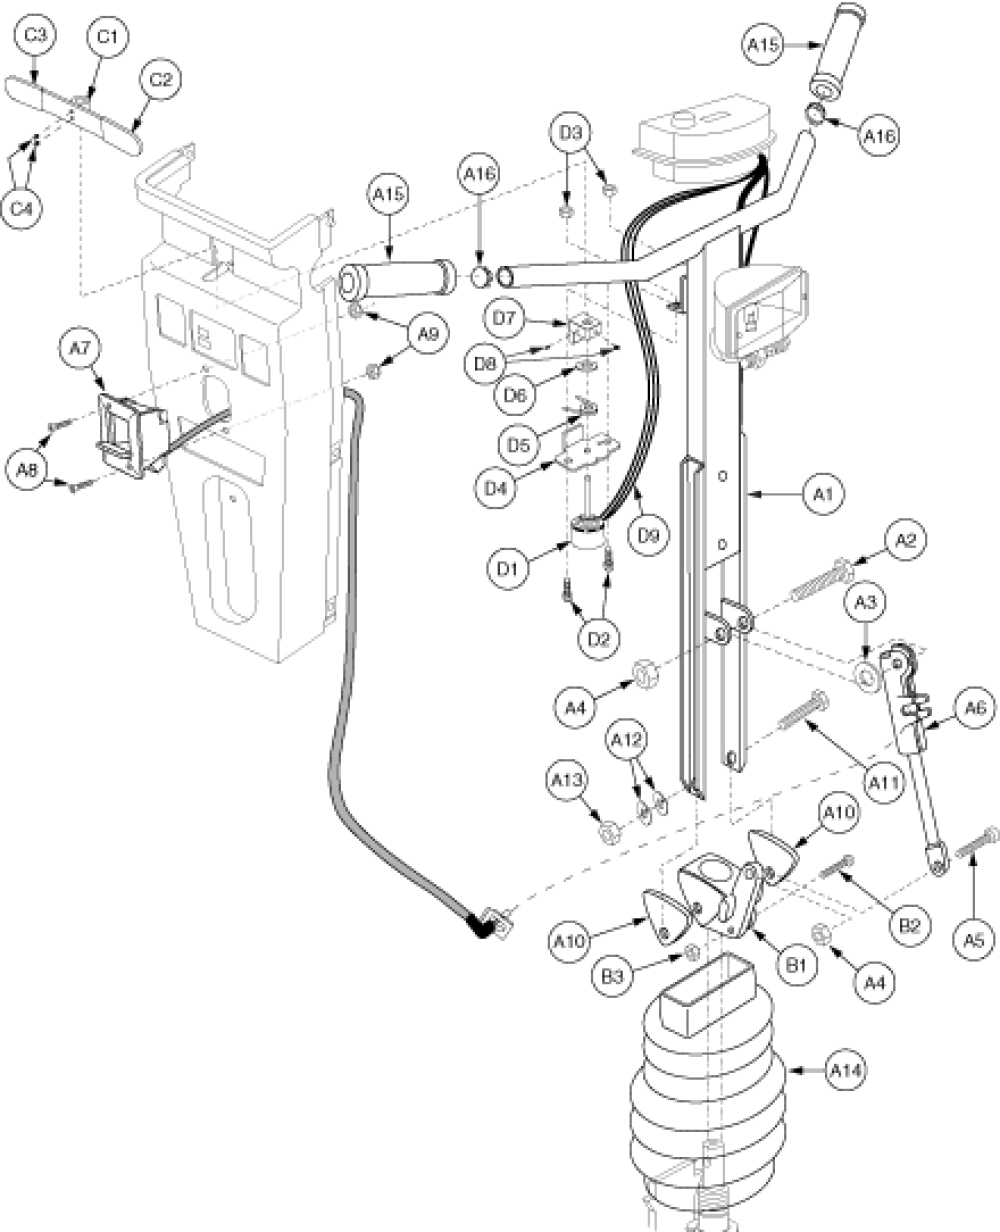 Frame Assembly - Tillerg2 parts diagram